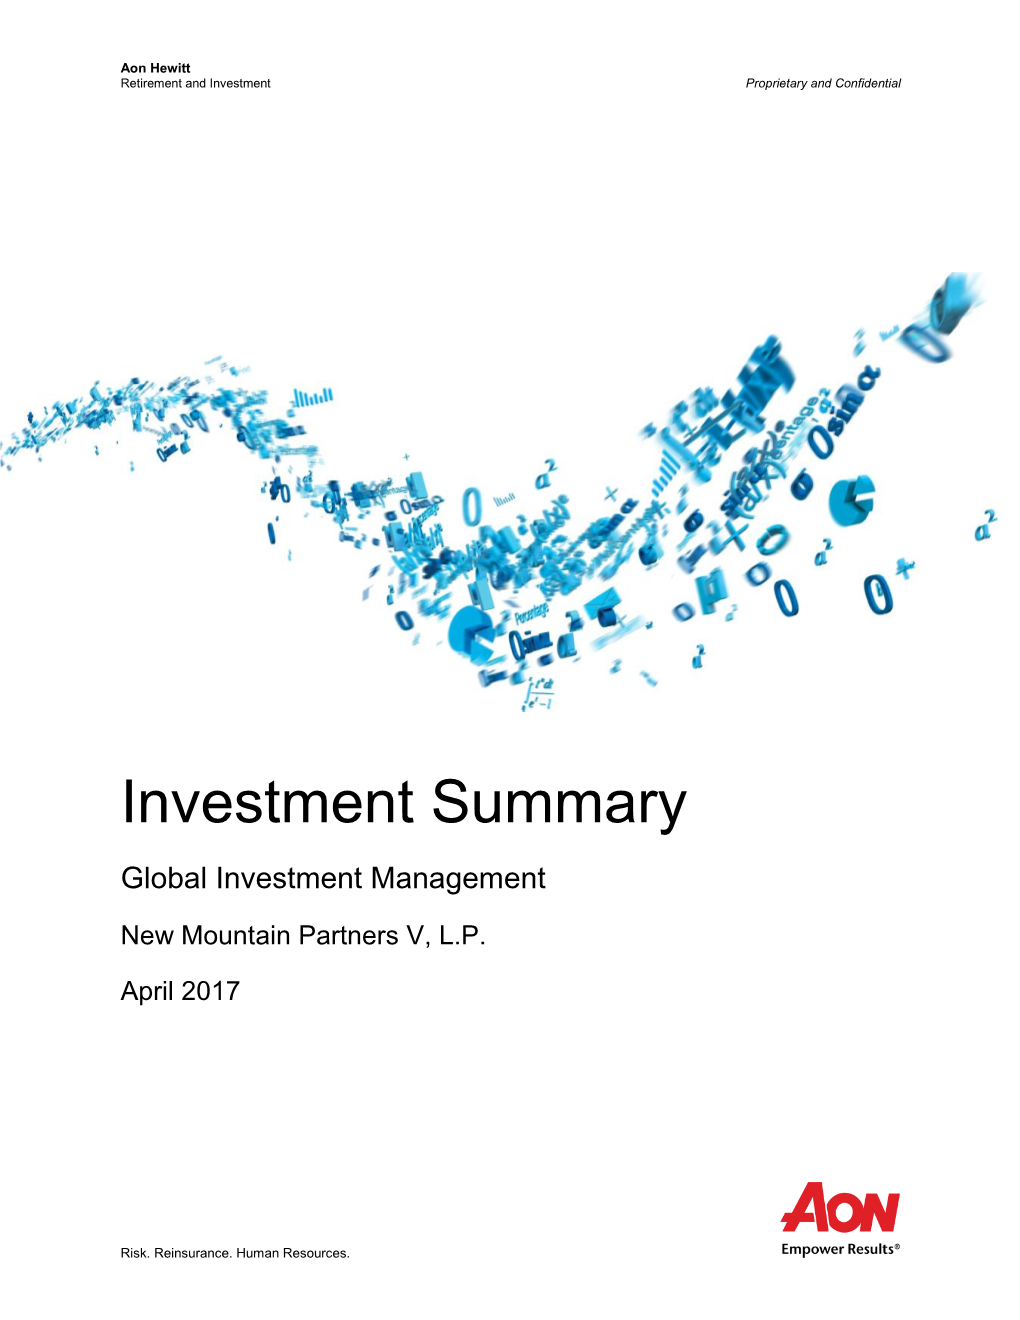 Aon New Mountain V Investment Summary